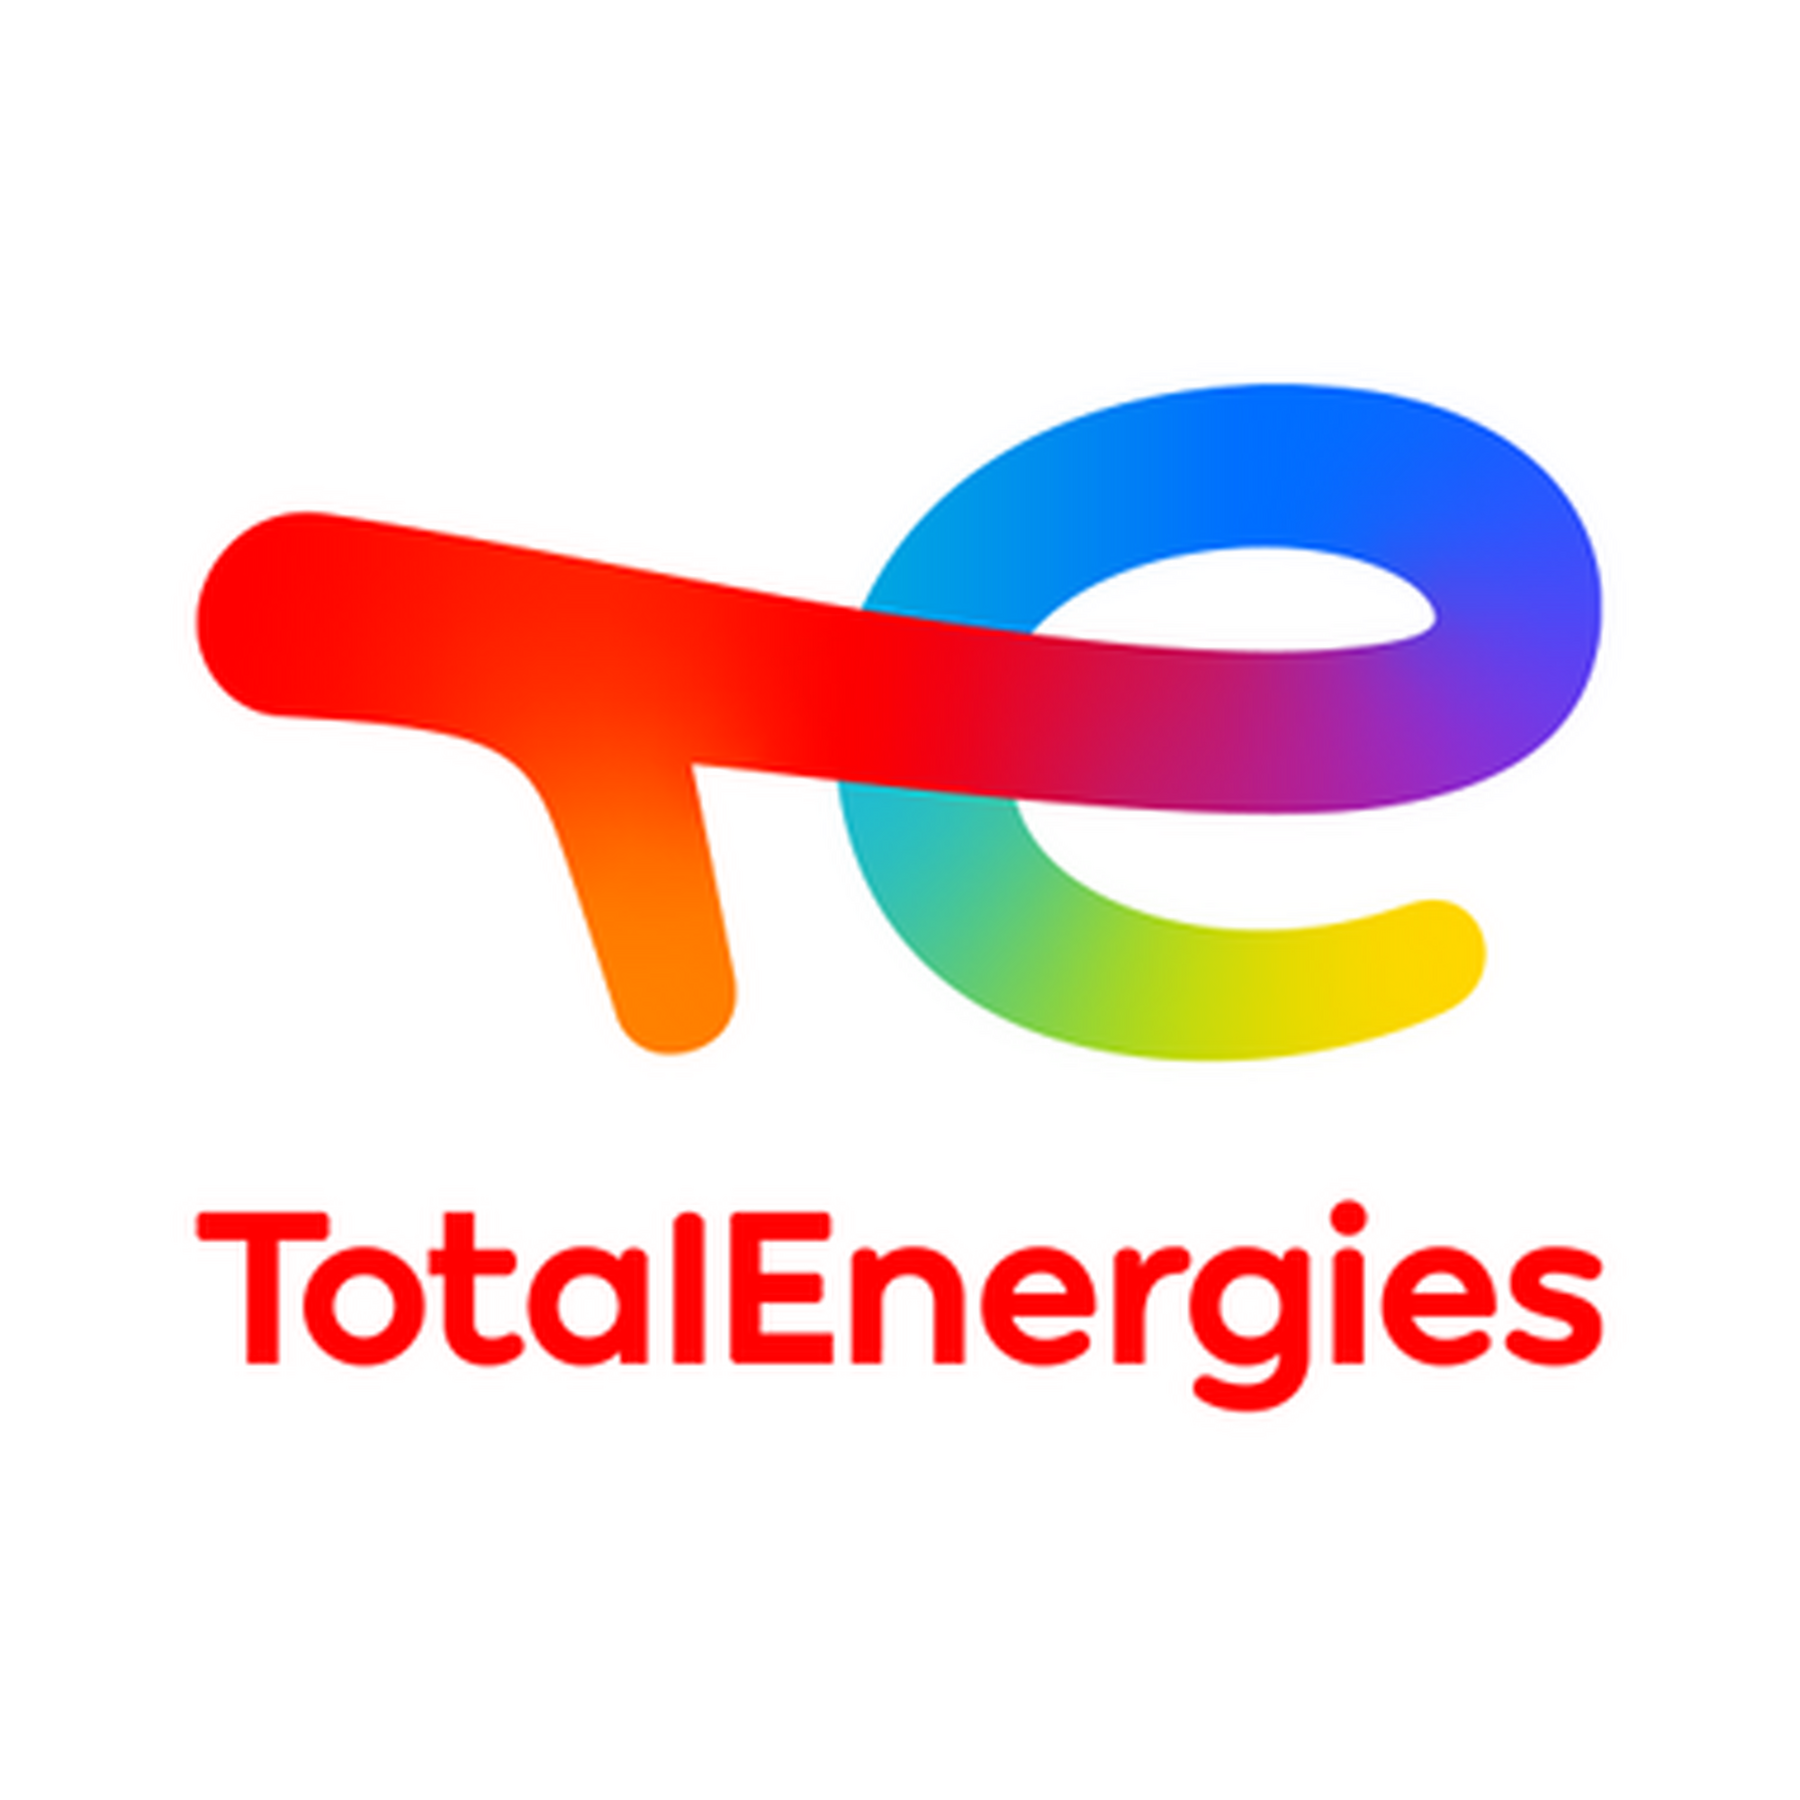 Logo totalenergies